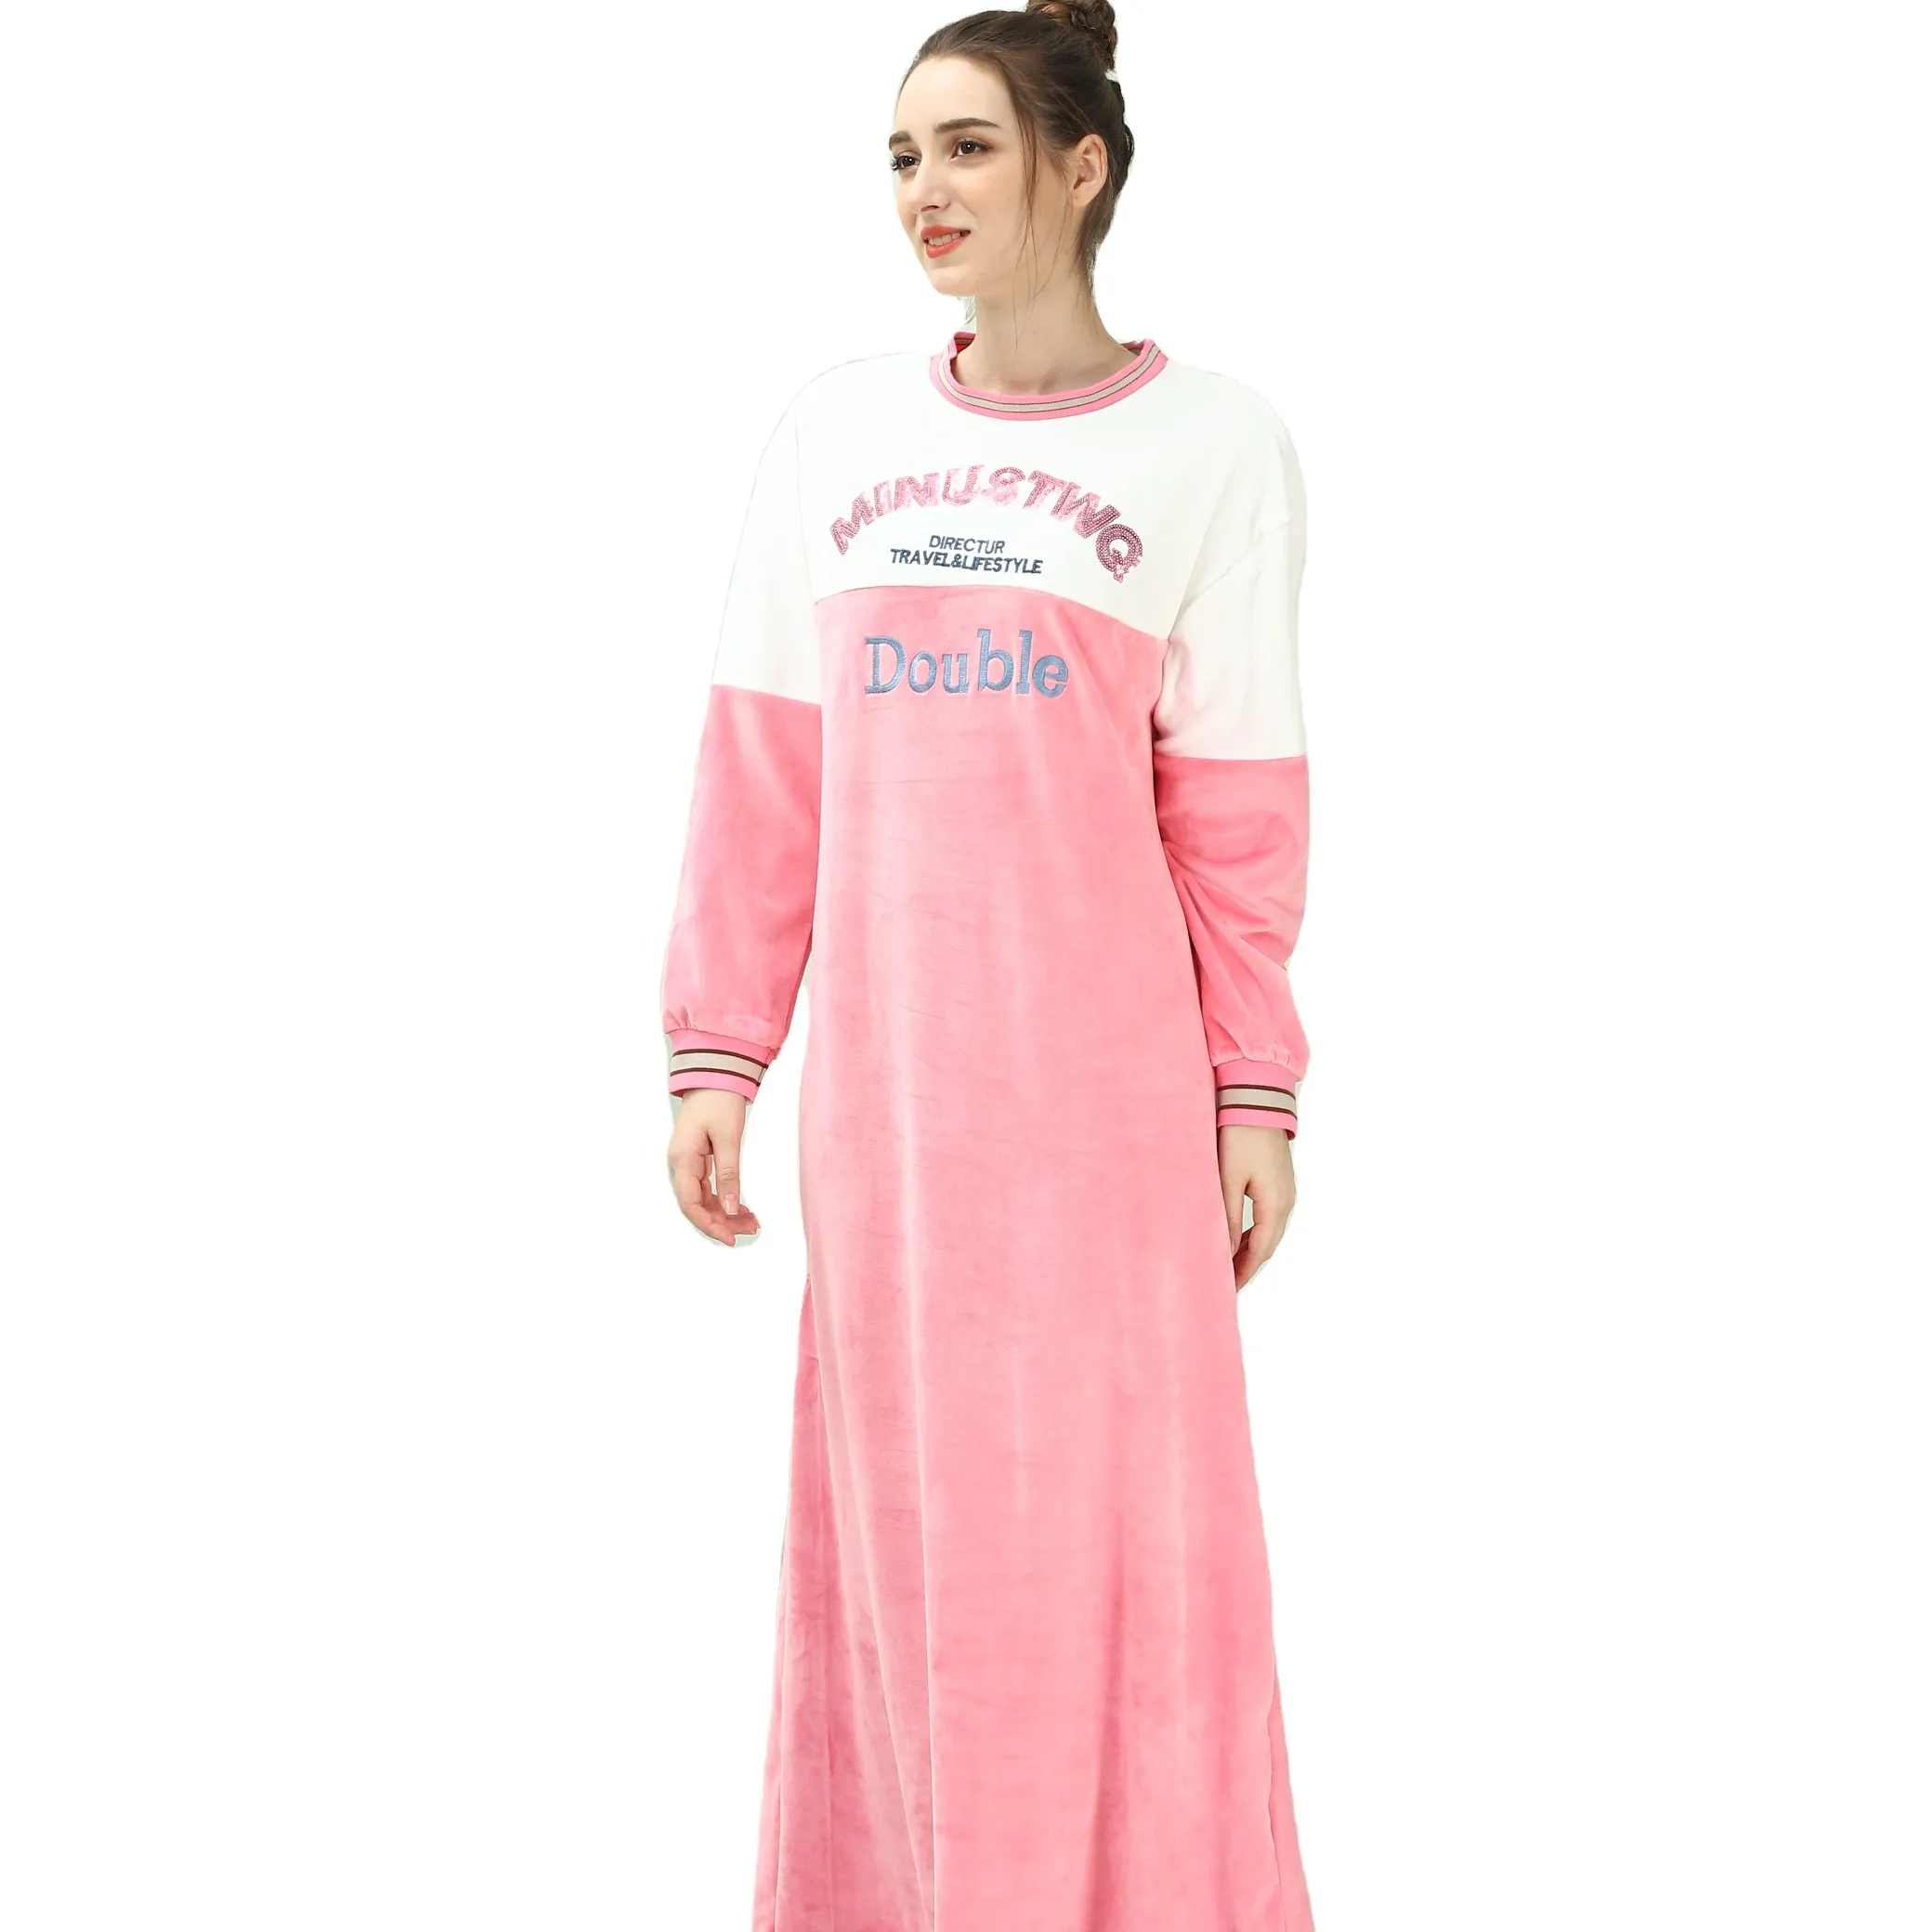 冬のパジャマ女性フランネルドレッシングネグリバスローブガウンかわいいピンクのパジャマ厚い暖かいナイトドレス